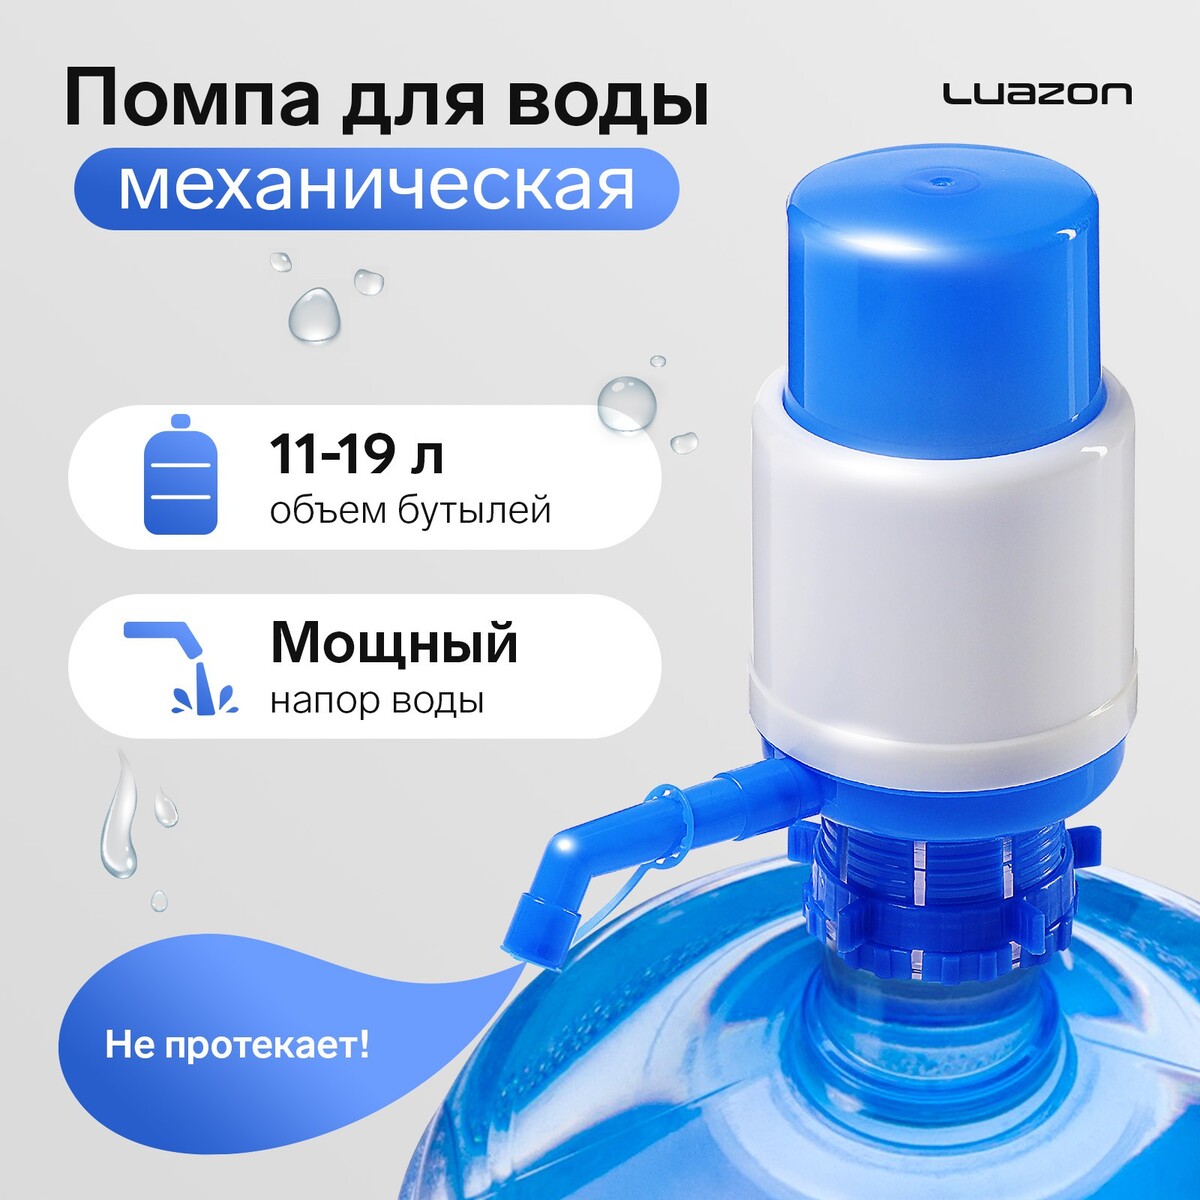 Помпа для воды luazon, механическая, средняя, под бутыль от 11 до 19 л, голубая помпа механическая для бутилированной воды masterprof 130916